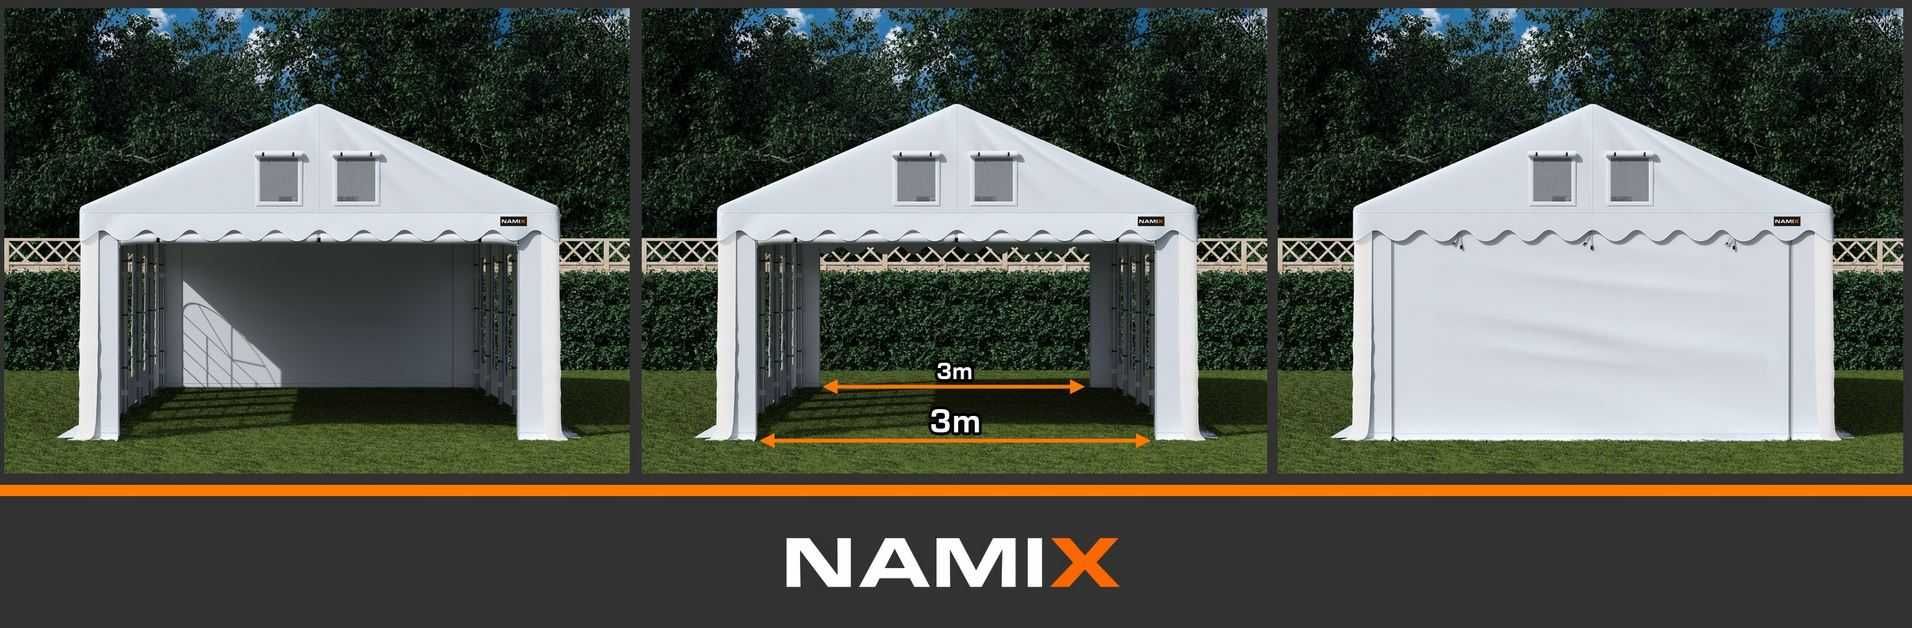 Namiot PRESTIGE 4x6-2,6m ogrodowy imprezowy garaż wzmocniony PVC 560g